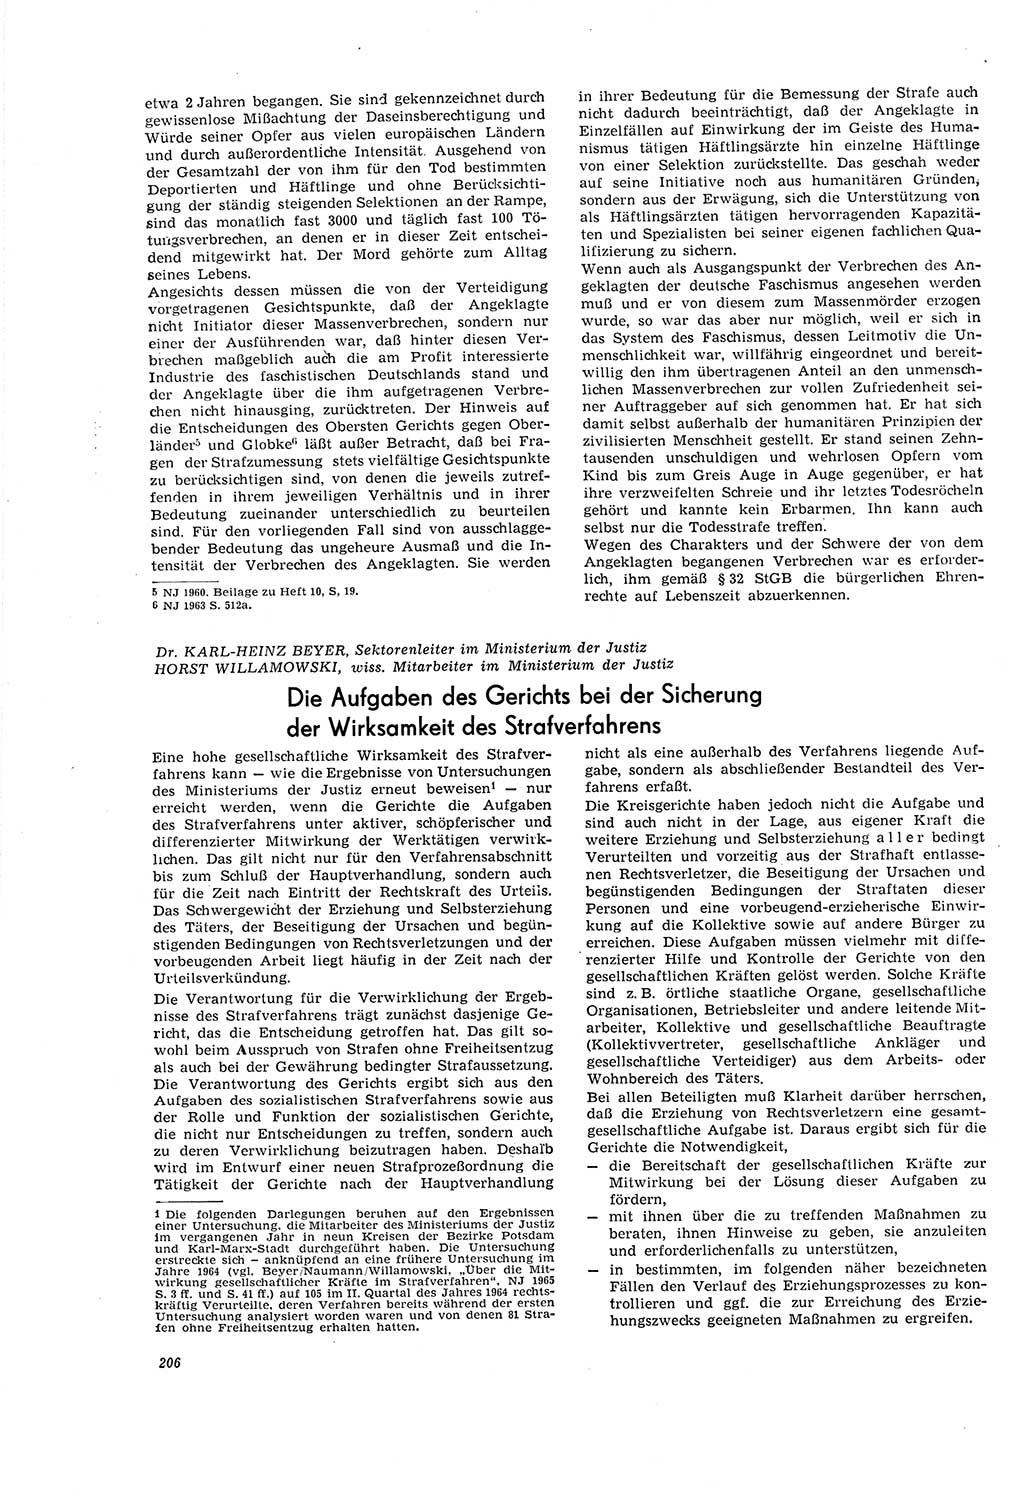 Neue Justiz (NJ), Zeitschrift für Recht und Rechtswissenschaft [Deutsche Demokratische Republik (DDR)], 20. Jahrgang 1966, Seite 206 (NJ DDR 1966, S. 206)